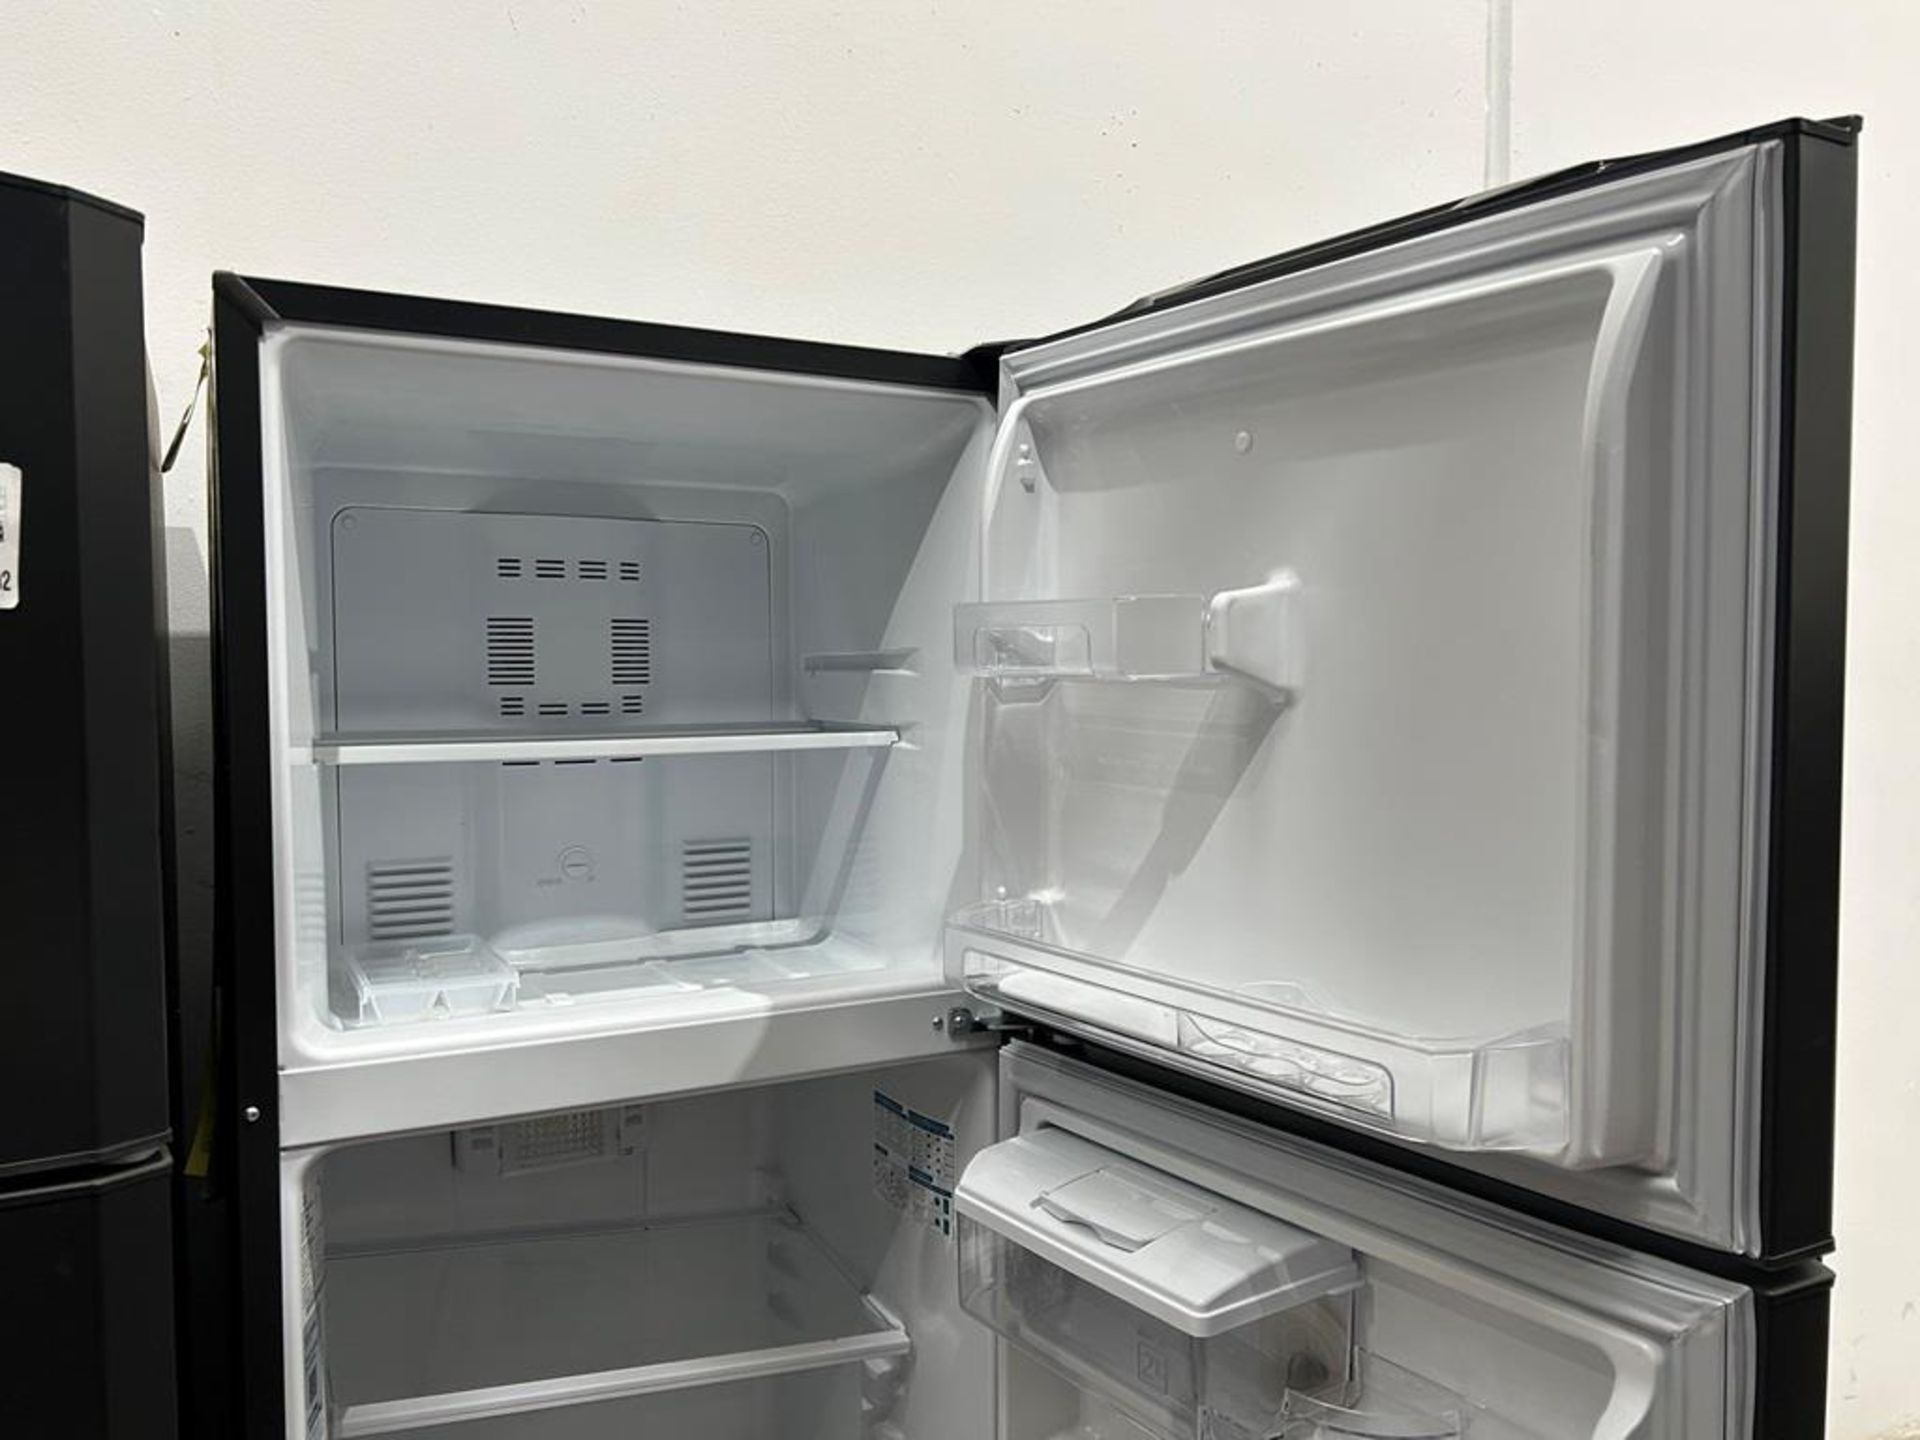 Lote de 2 refrigeradores contiene: 1 refrigerador con dispensador de agua Marca MABE, Modelo RMA300 - Image 9 of 10